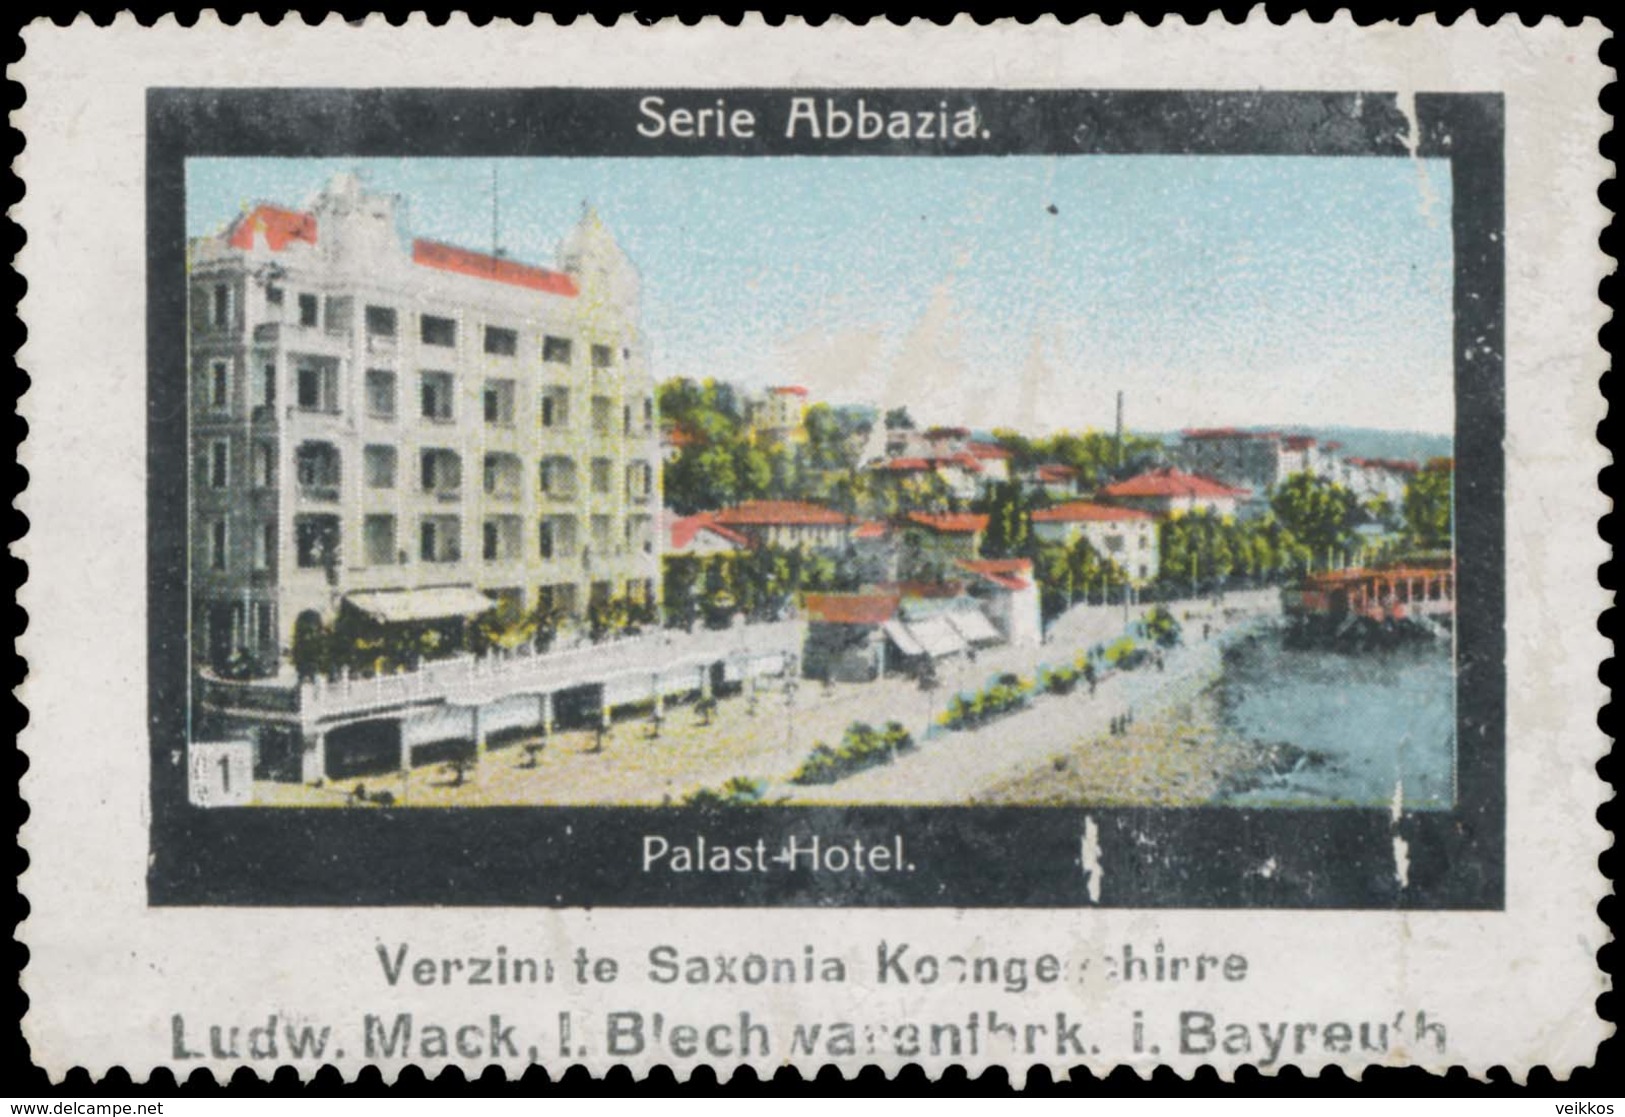 Bayreuth: Palast-Hotel In Abbazia Reklamemarke - Vignetten (Erinnophilie)